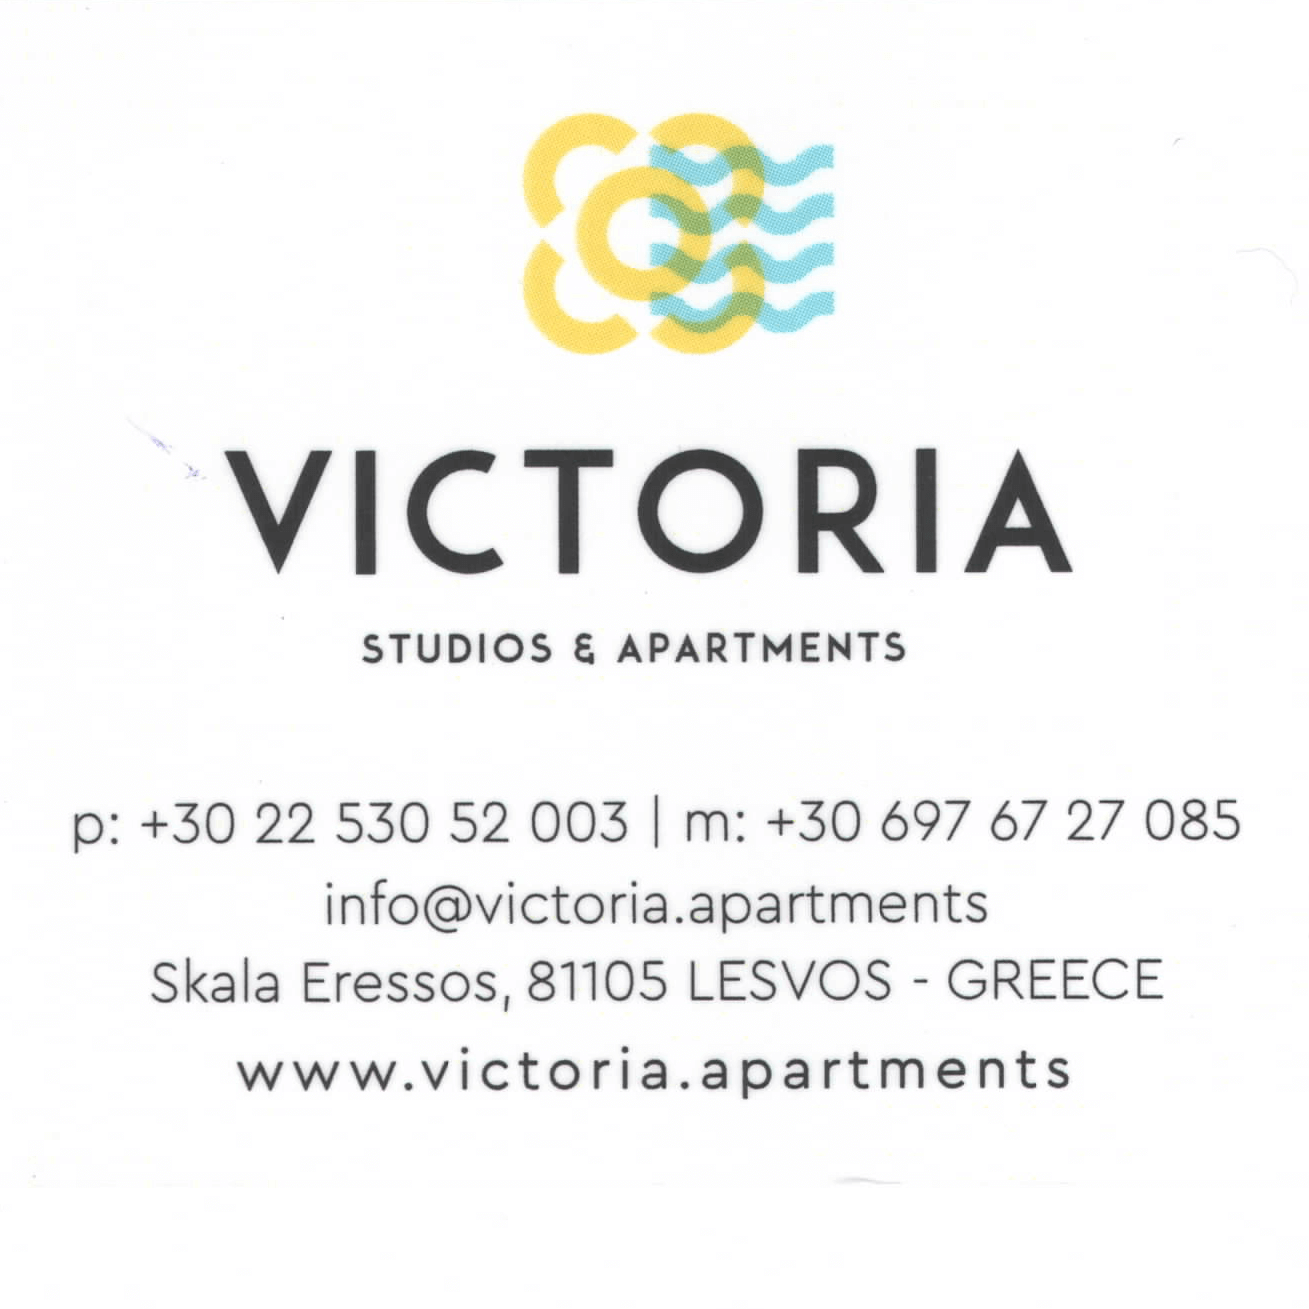 Victoria Studios & Apartments